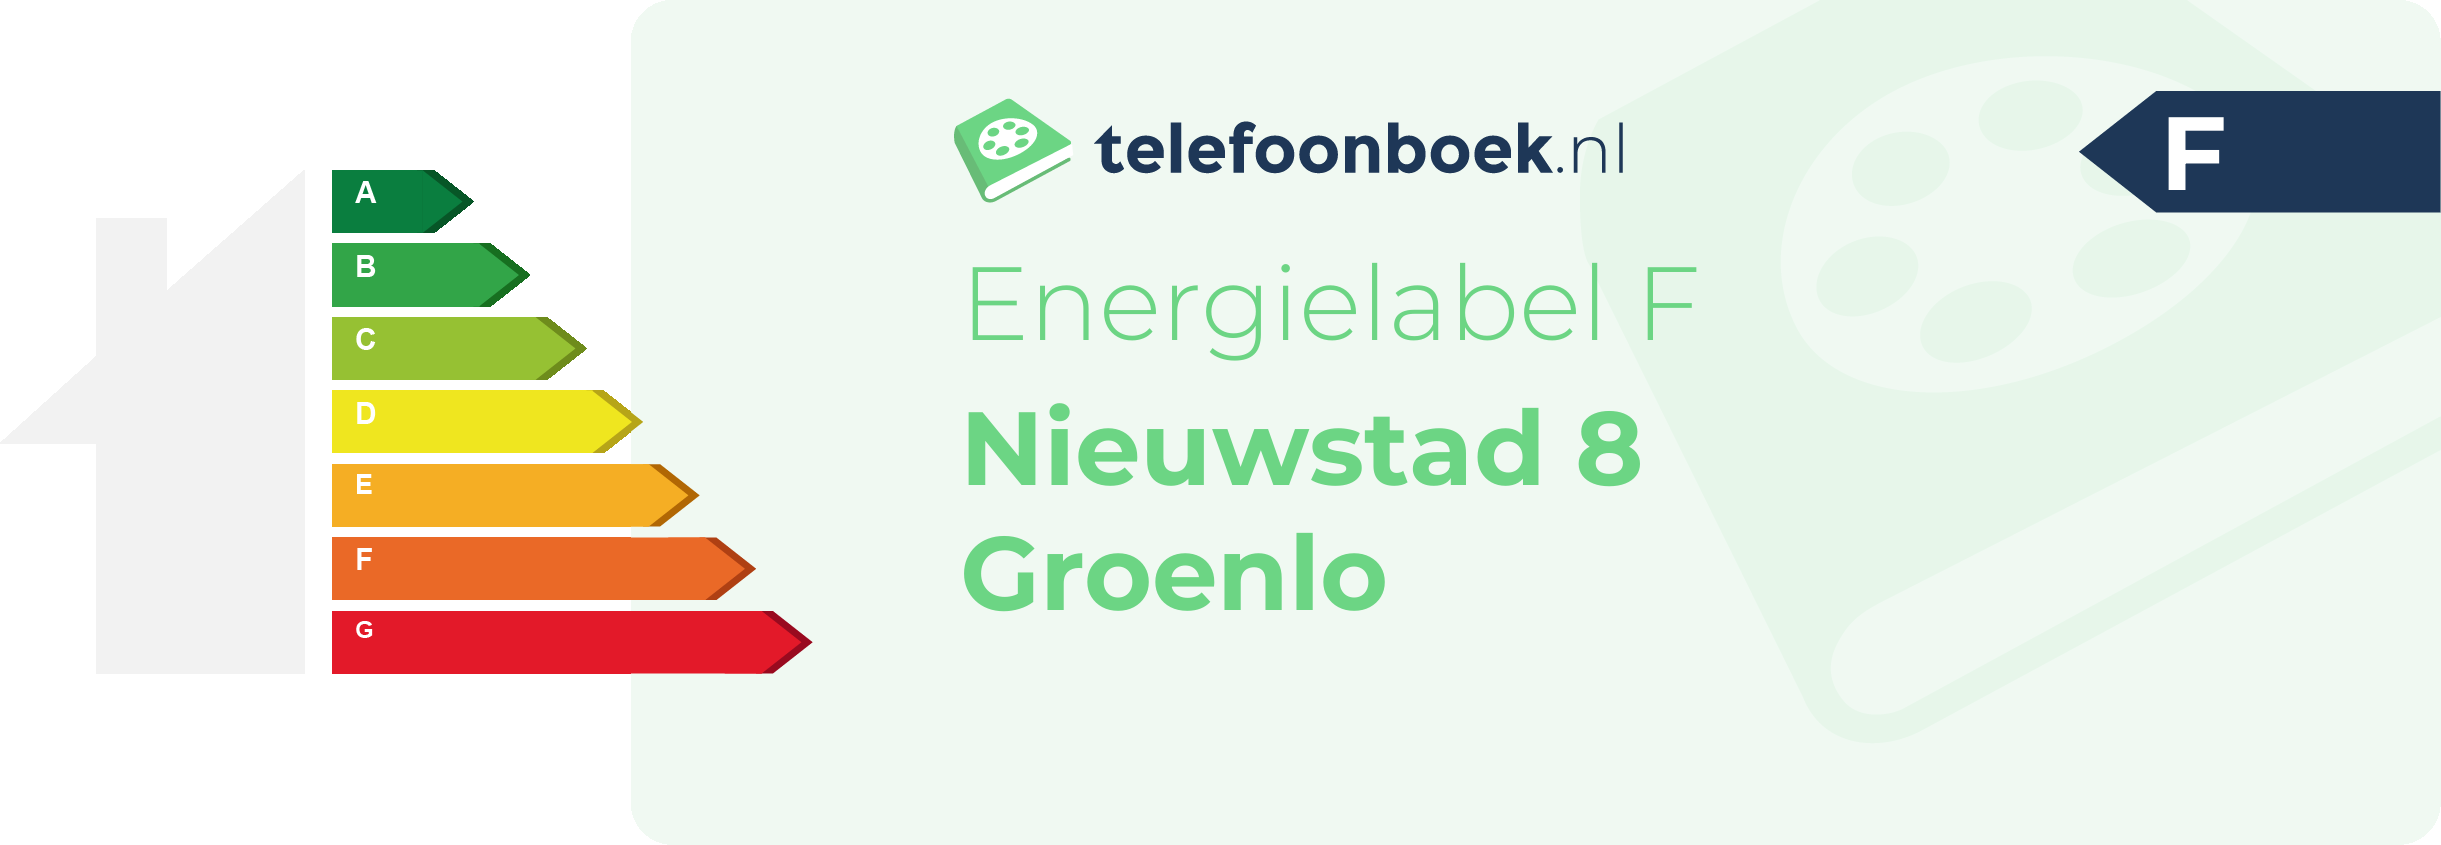 Energielabel Nieuwstad 8 Groenlo